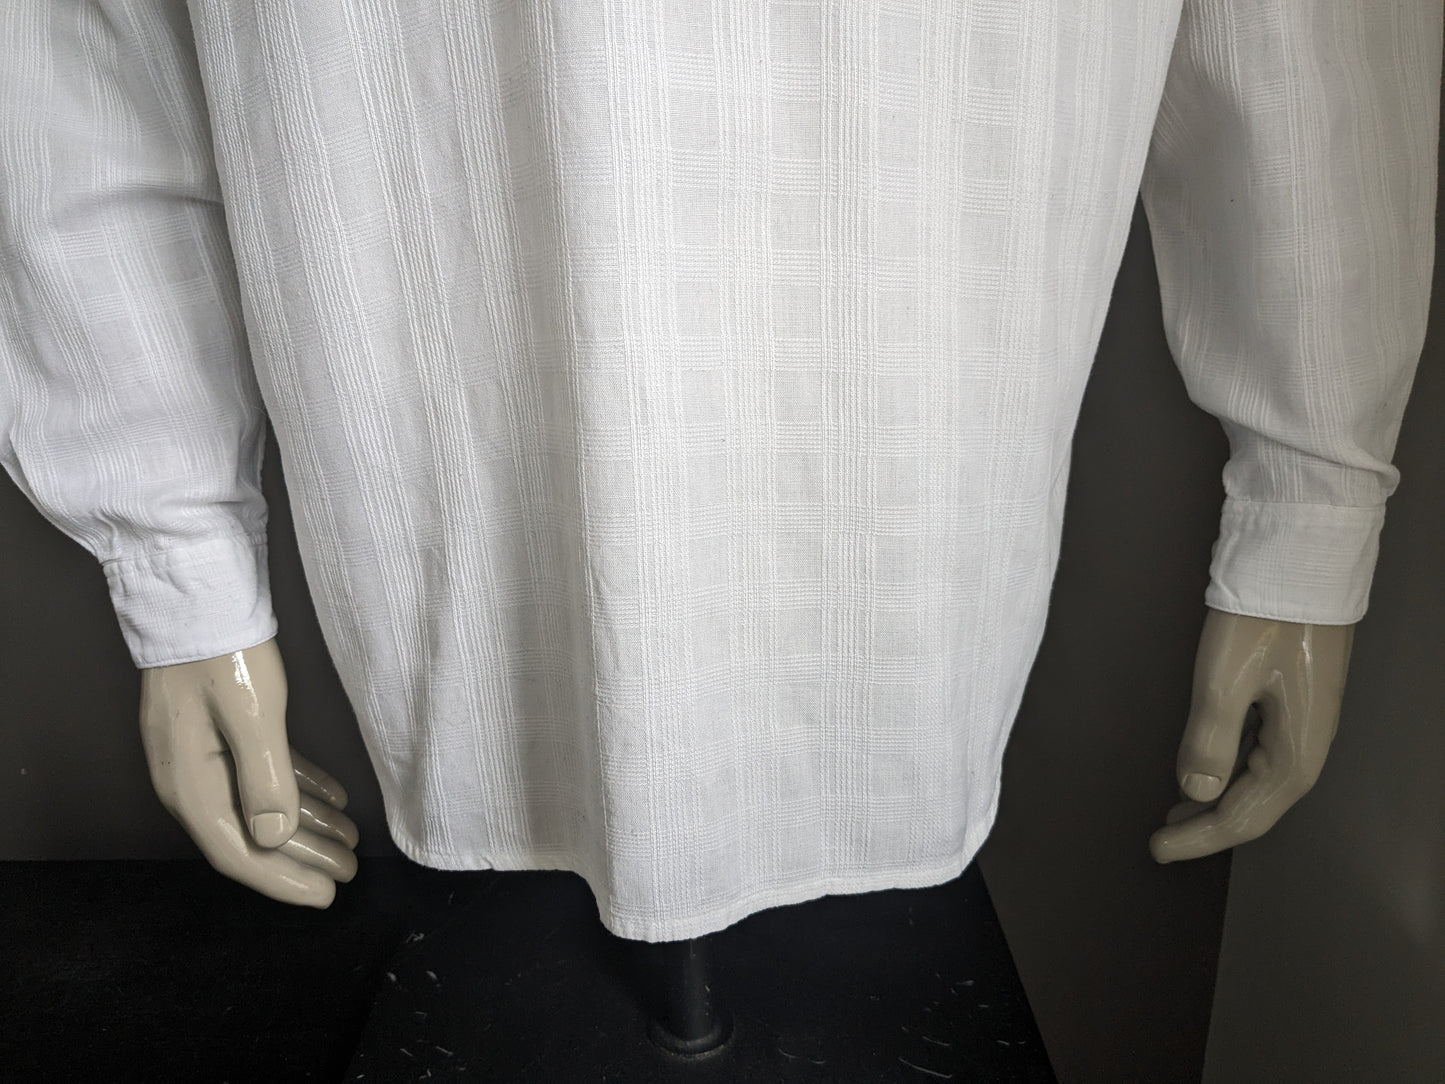 Chemise de compagnie Vintage Gaucho avec application des anciens combattants et mao / agriculteurs / collier debout. Motif blanc. Taille l / xl.